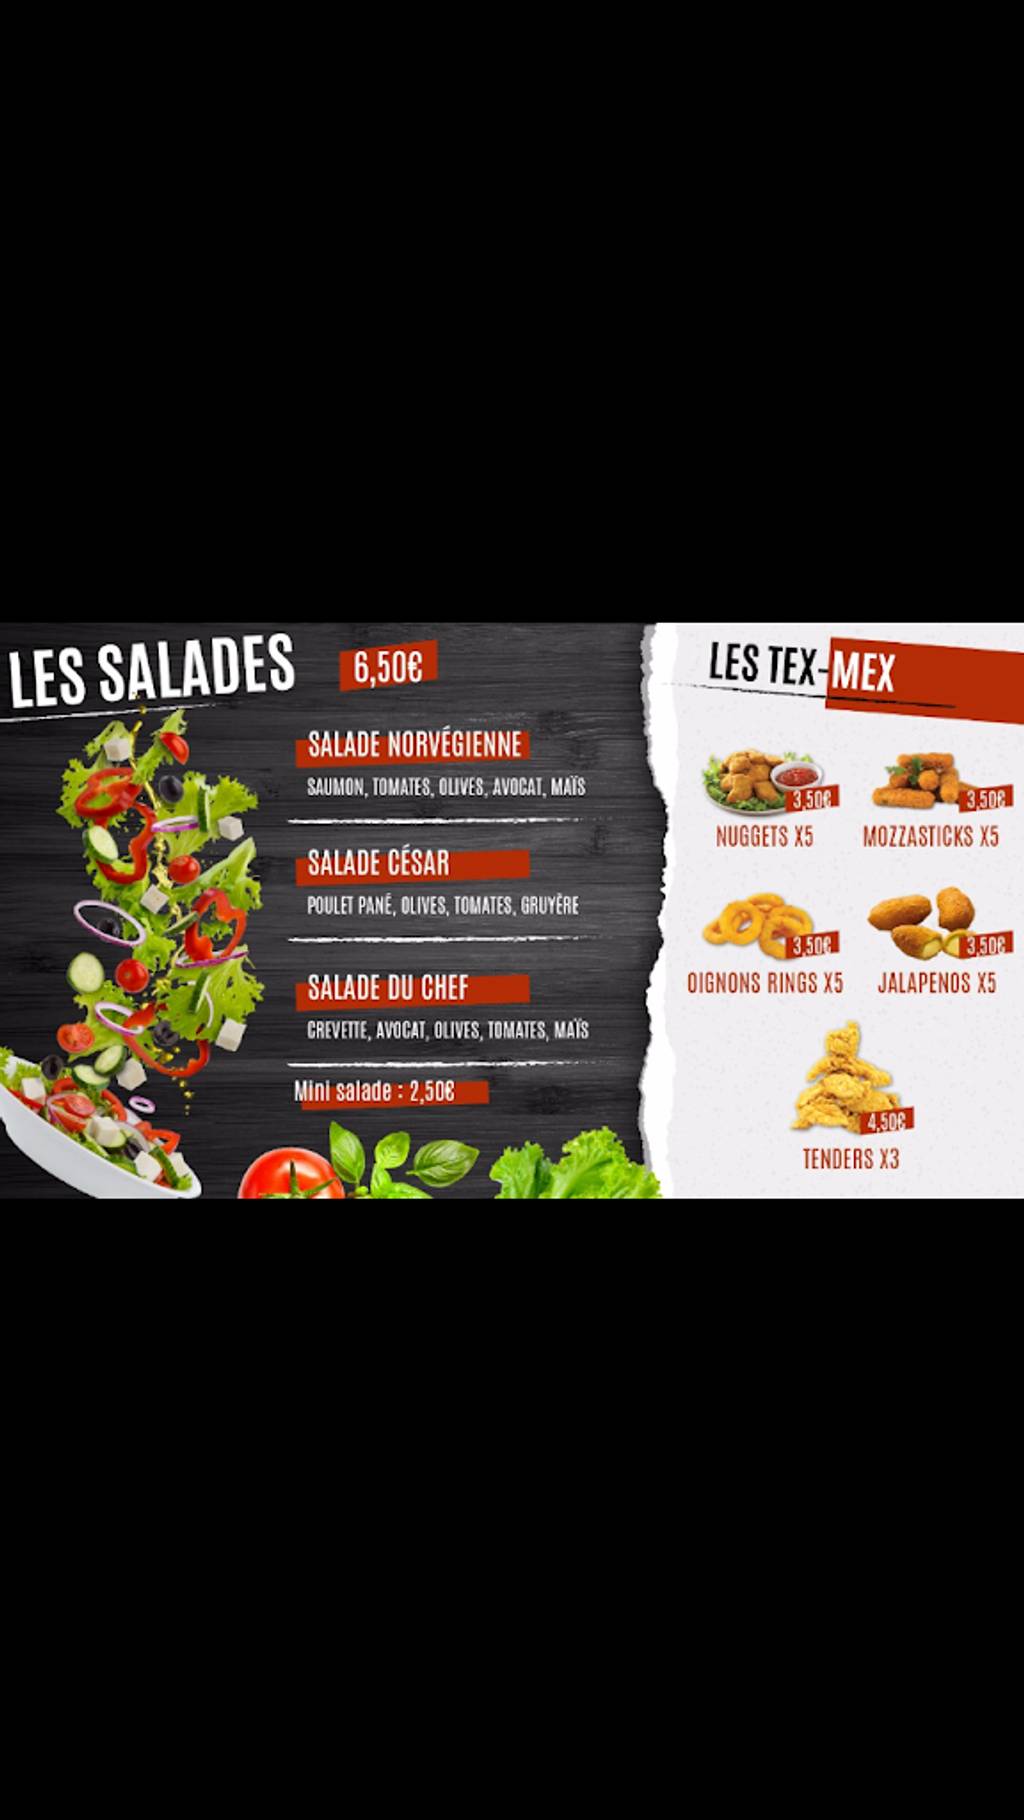 THE BEST FOOD Burger Versailles - Food group Fast food Advertising Cuisine Food